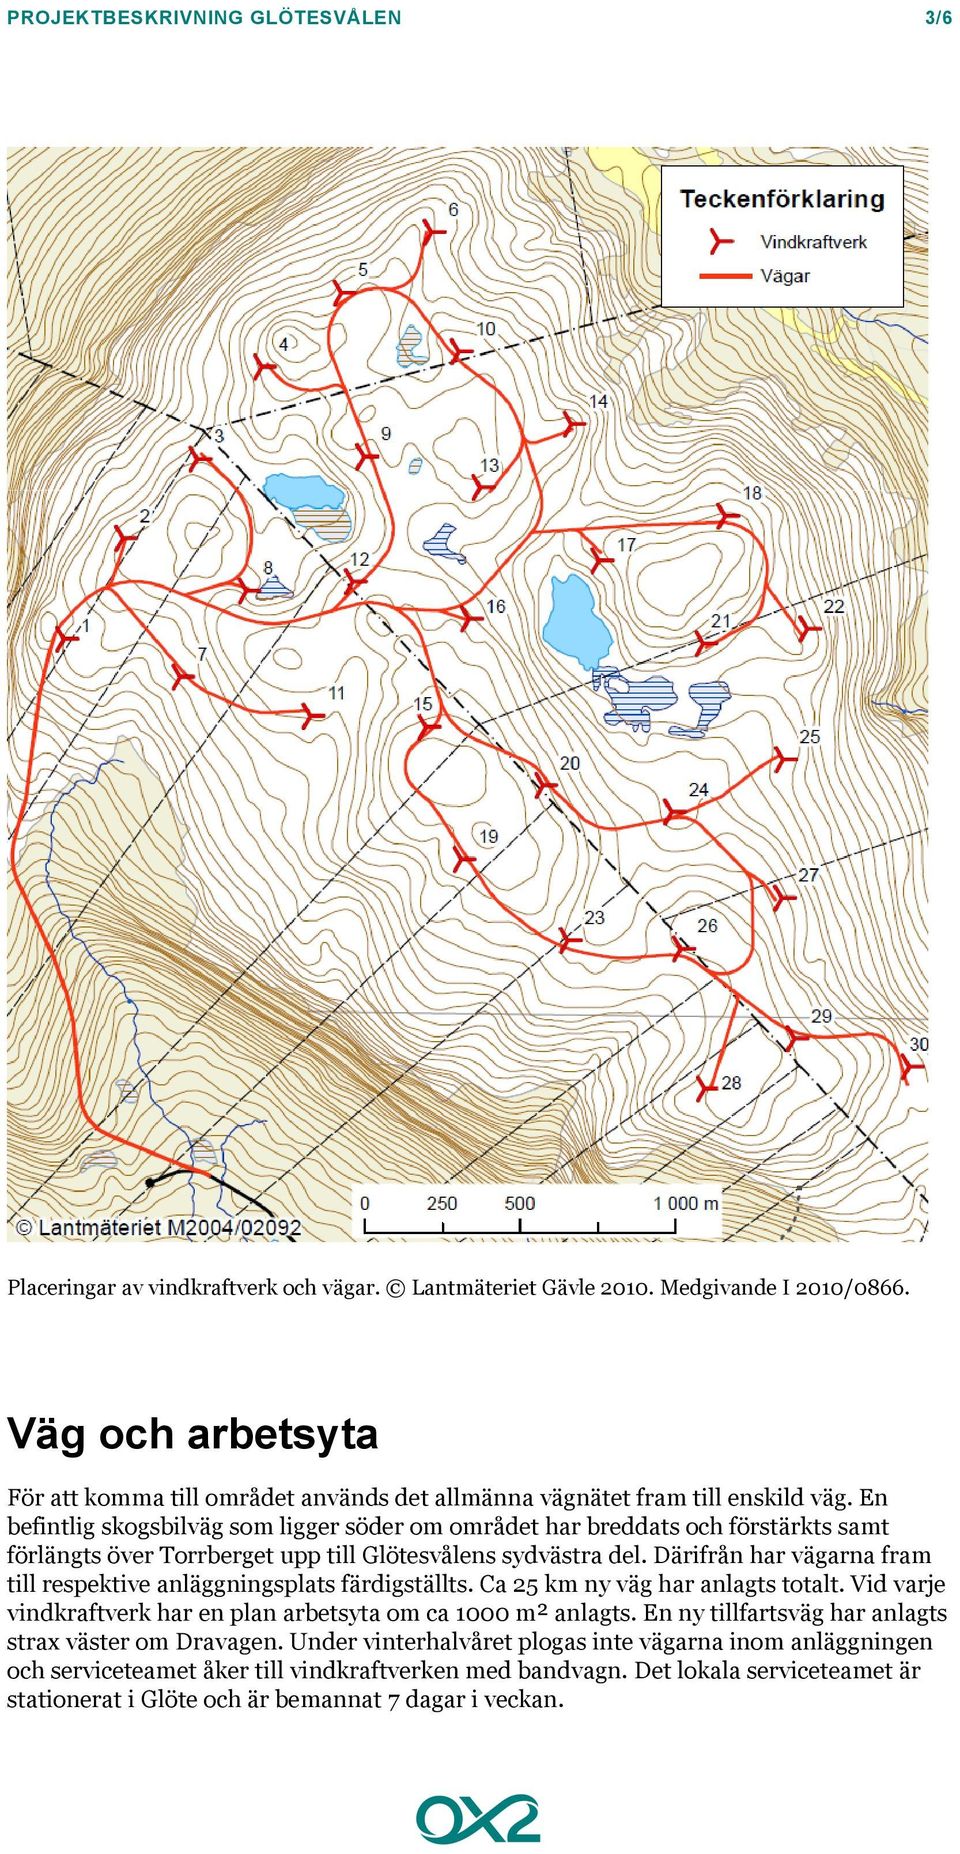 En befintlig skogsbilväg som ligger söder om området har breddats och förstärkts samt förlängts över Torrberget upp till Glötesvålens sydvästra del.